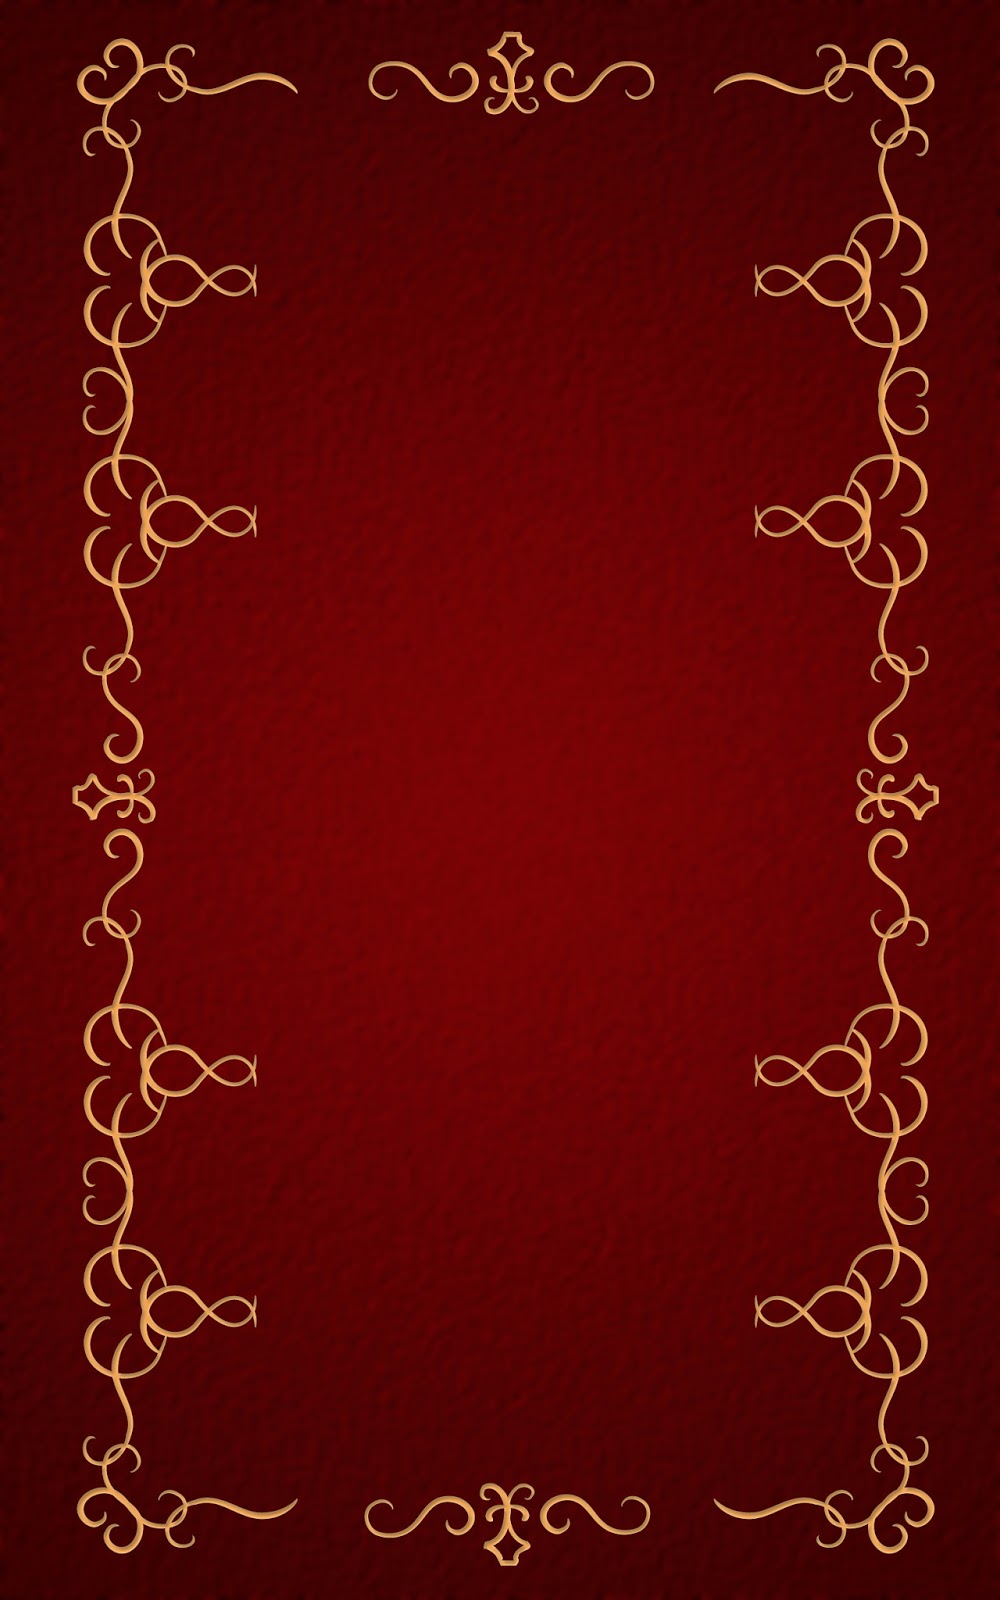 いーブックデザイン 電子書籍用表紙画像フリー素材 002 飾り罫 赤